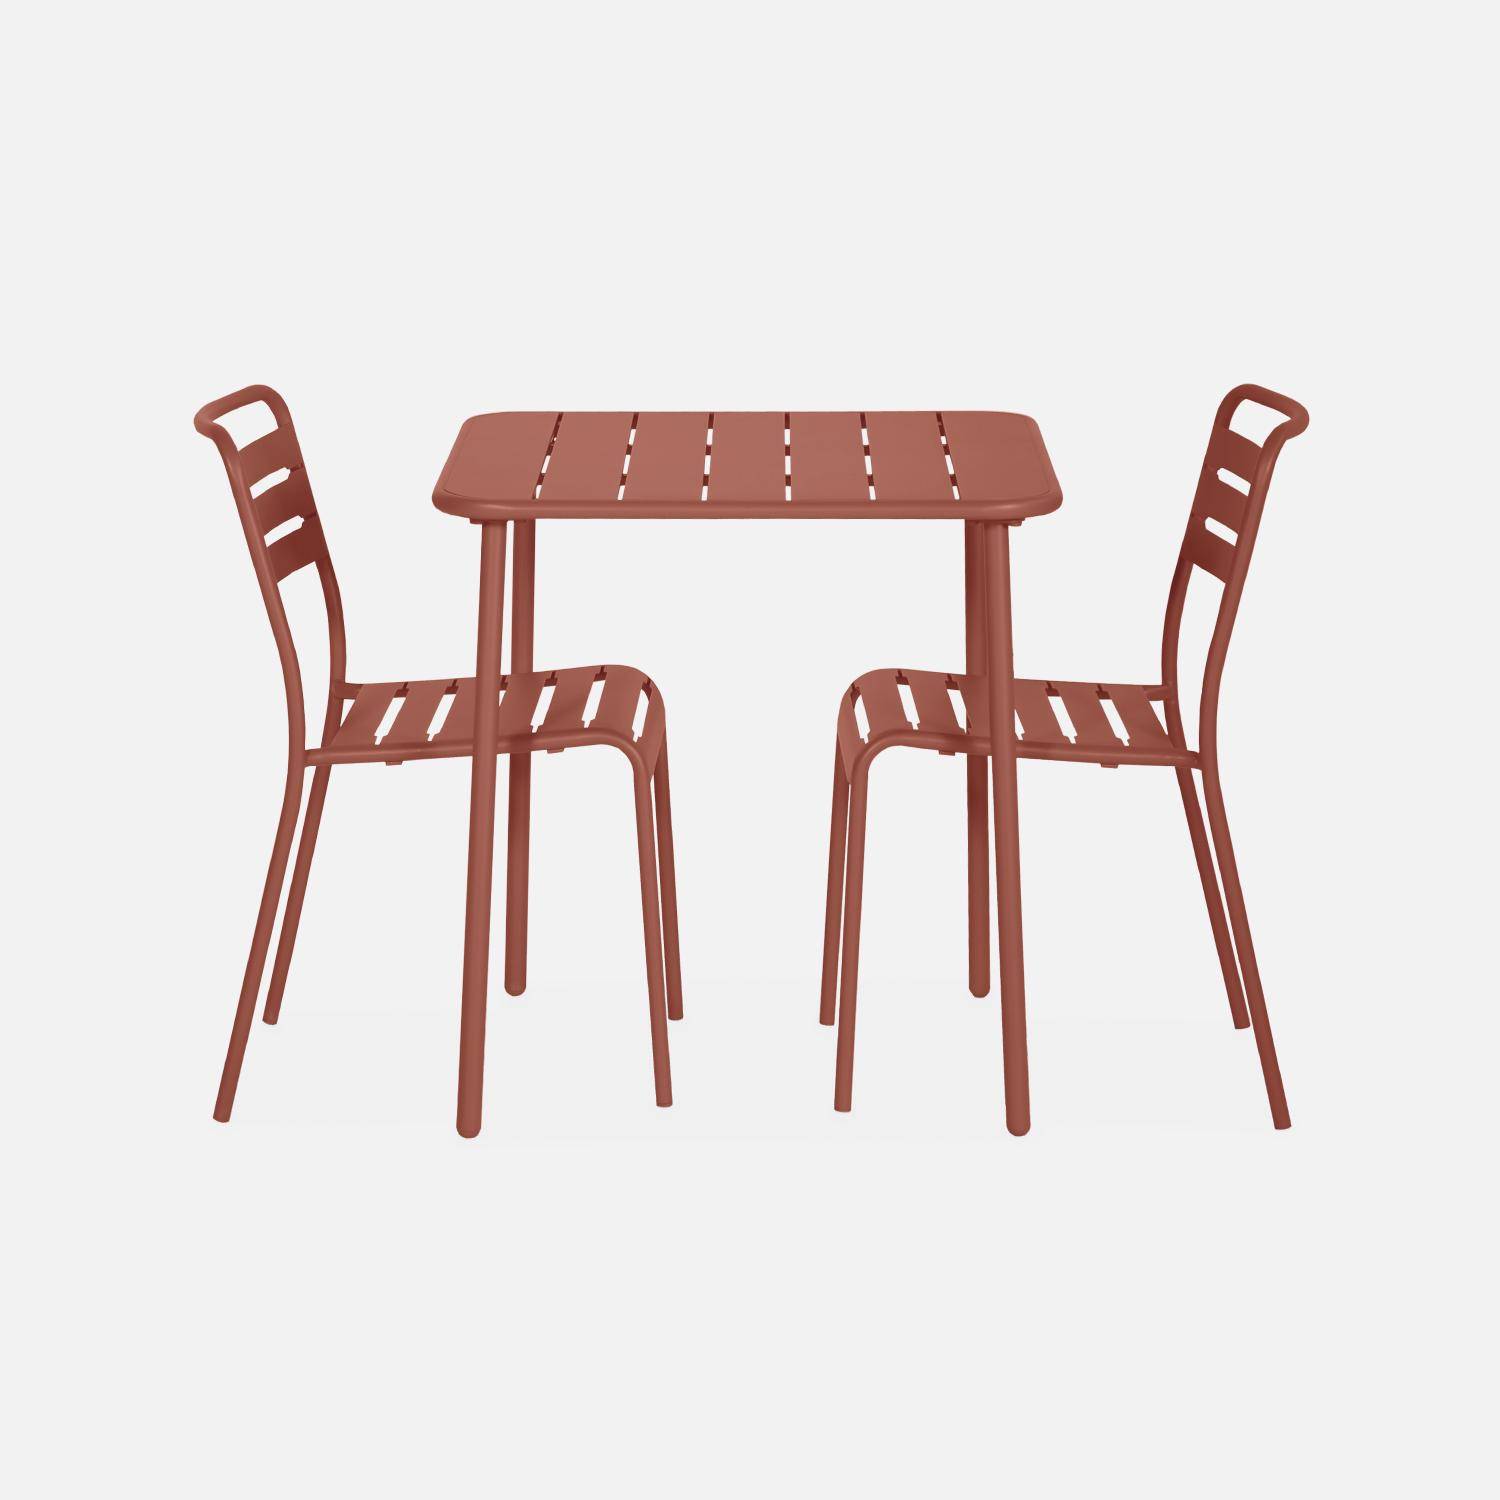 Amélia terracotta metalen tuintafel met 2 stoelen, latten en afgeronde hoeken, roestbestendige afwerking Photo5